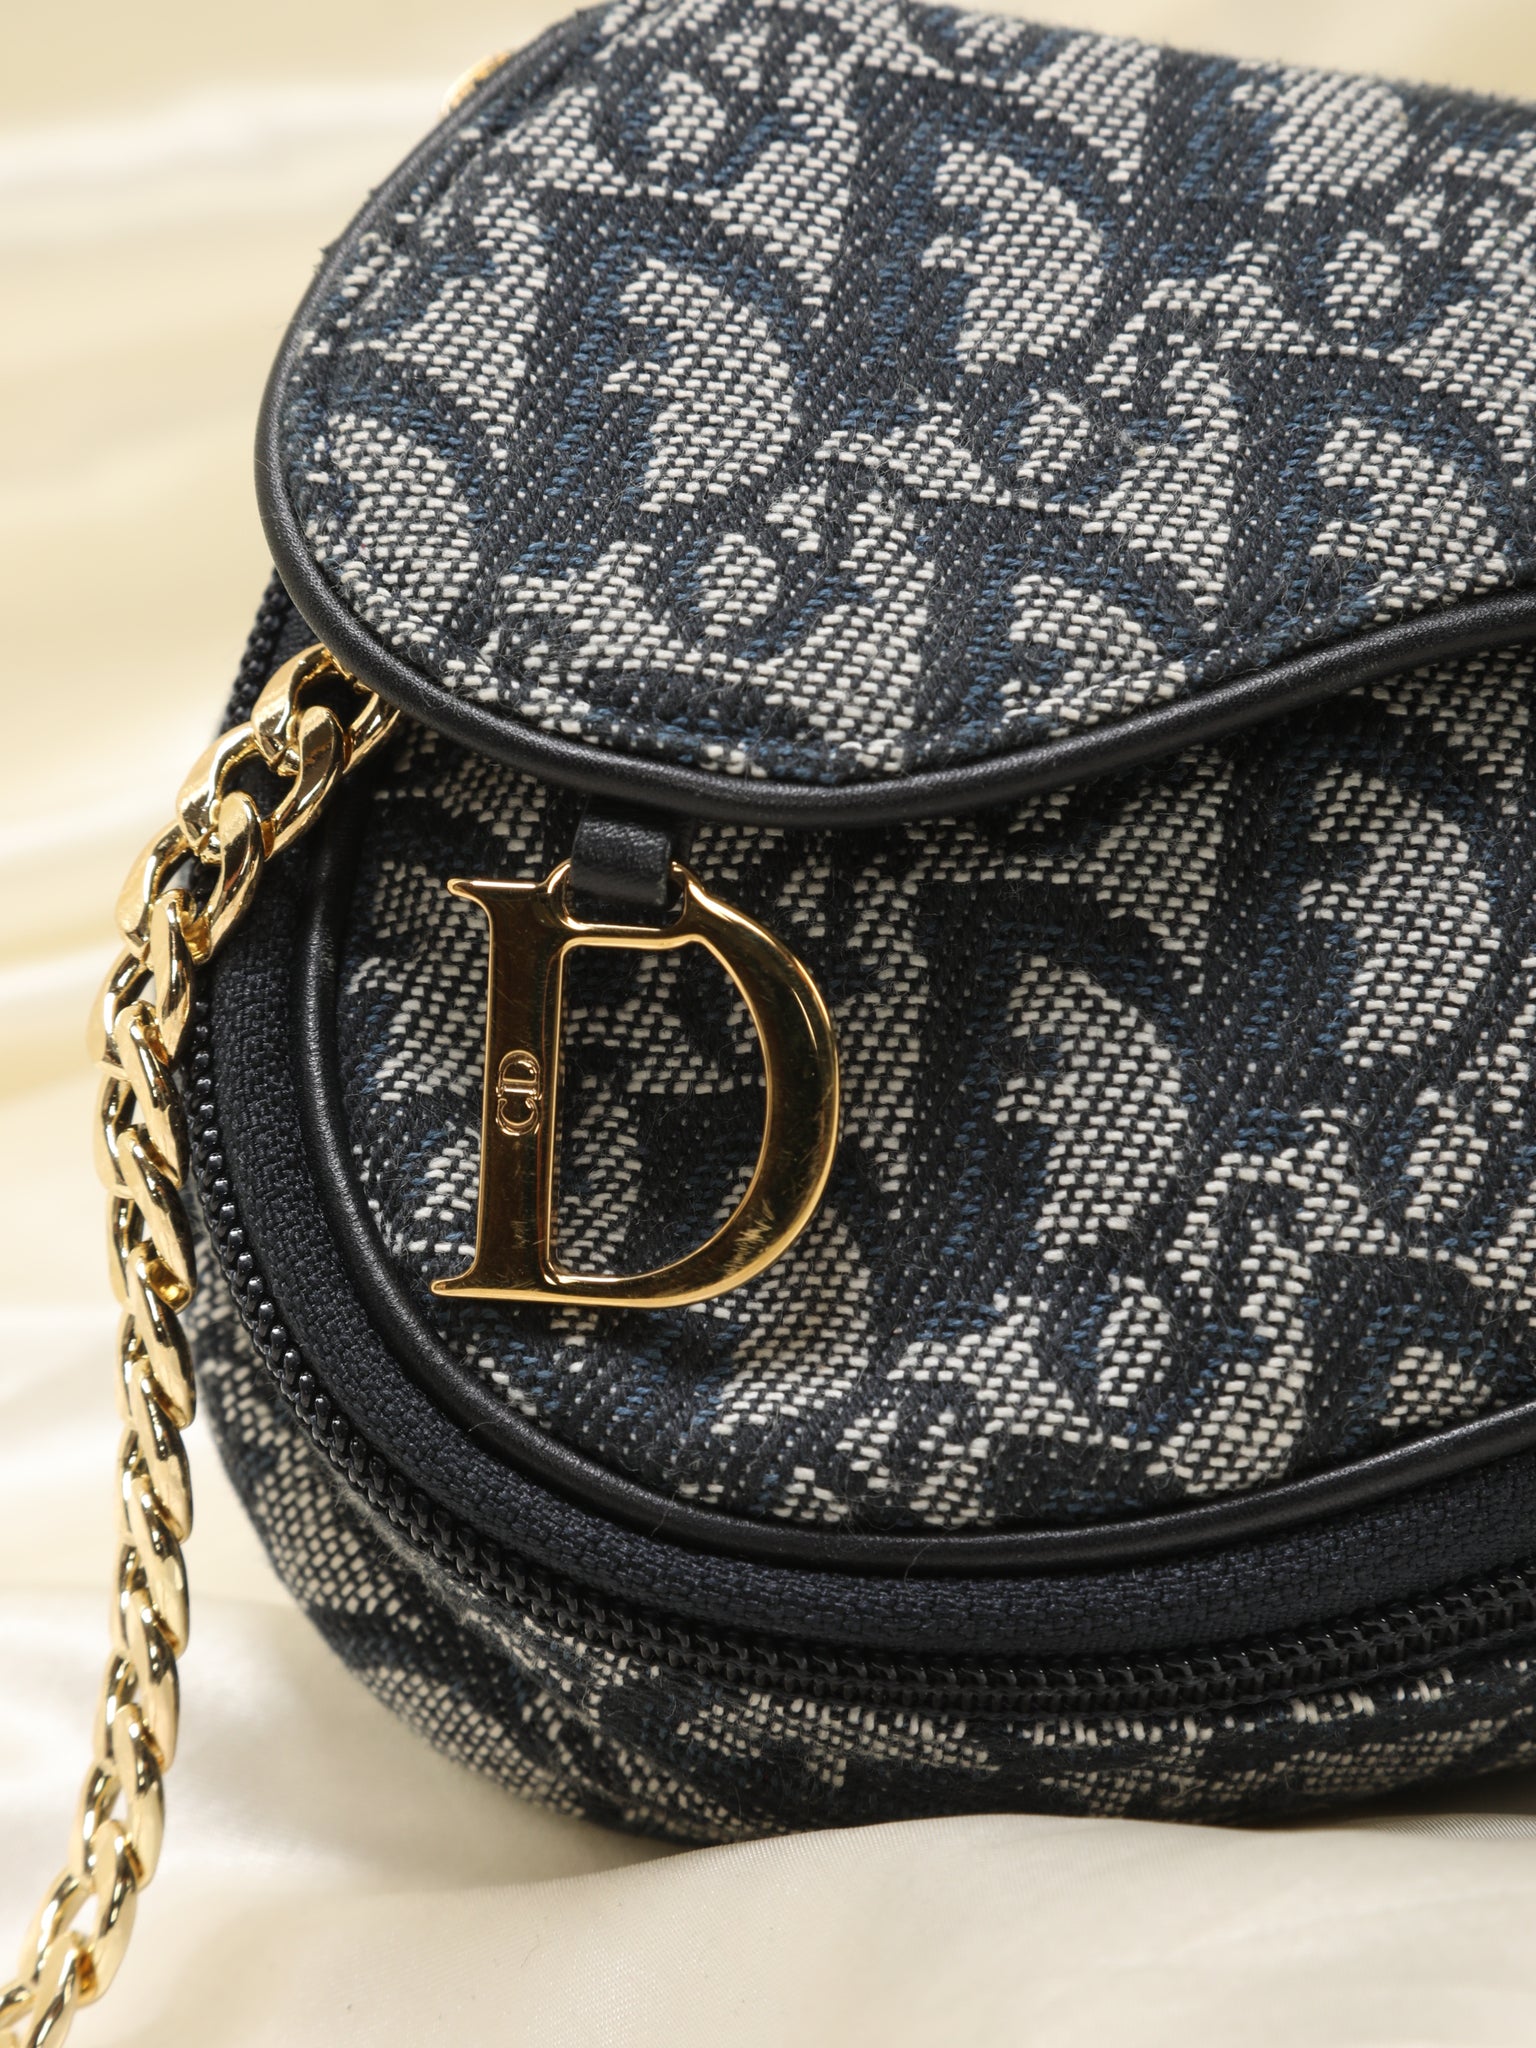 Dior chain pouch it is!!! : r/handbags